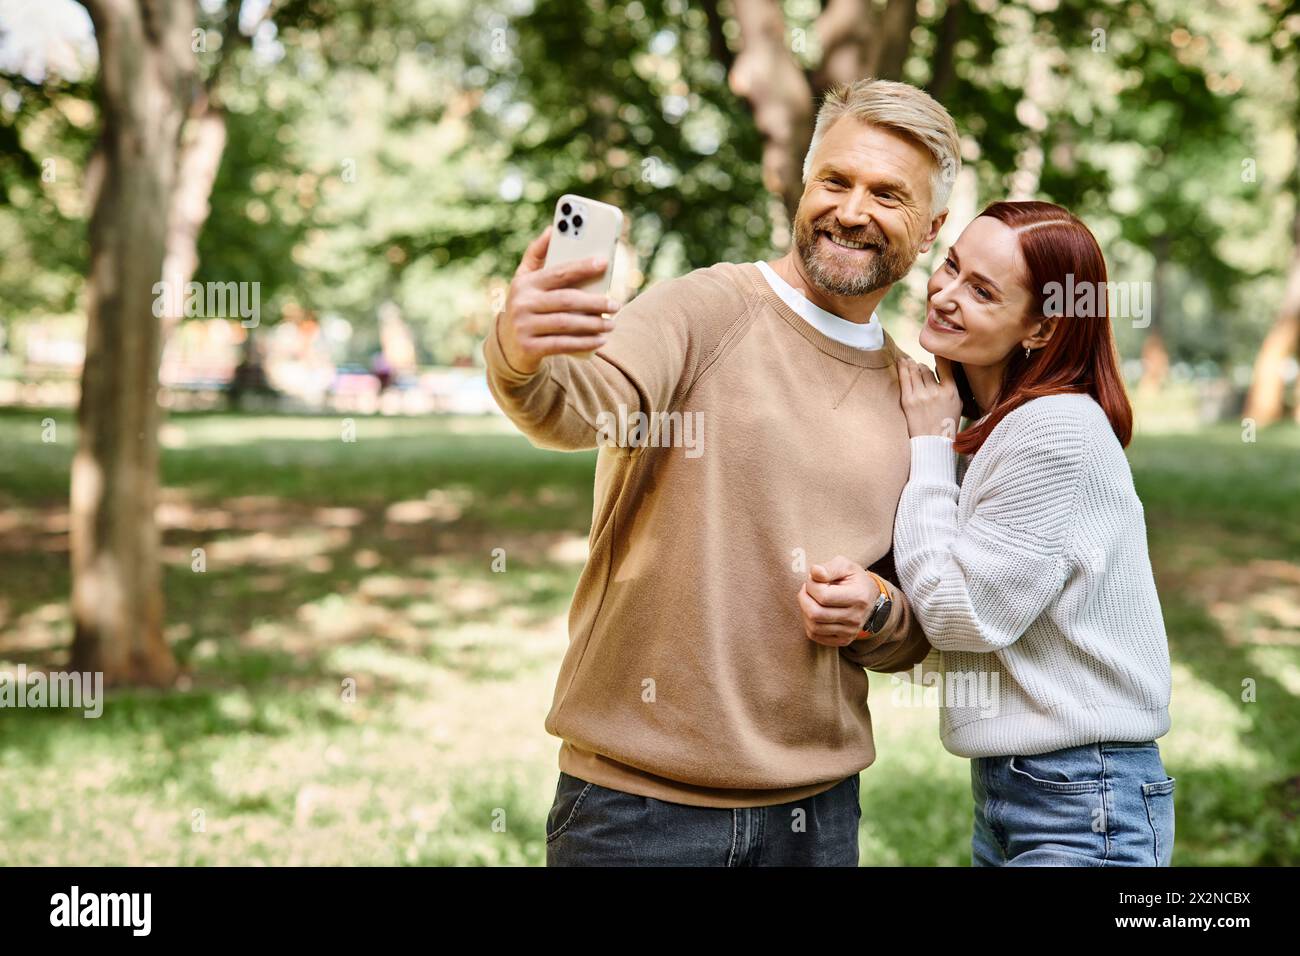 Ein Mann und eine Frau fangen einen Moment zusammen in einem Park ein, indem sie ein Selfie machen. Stockfoto